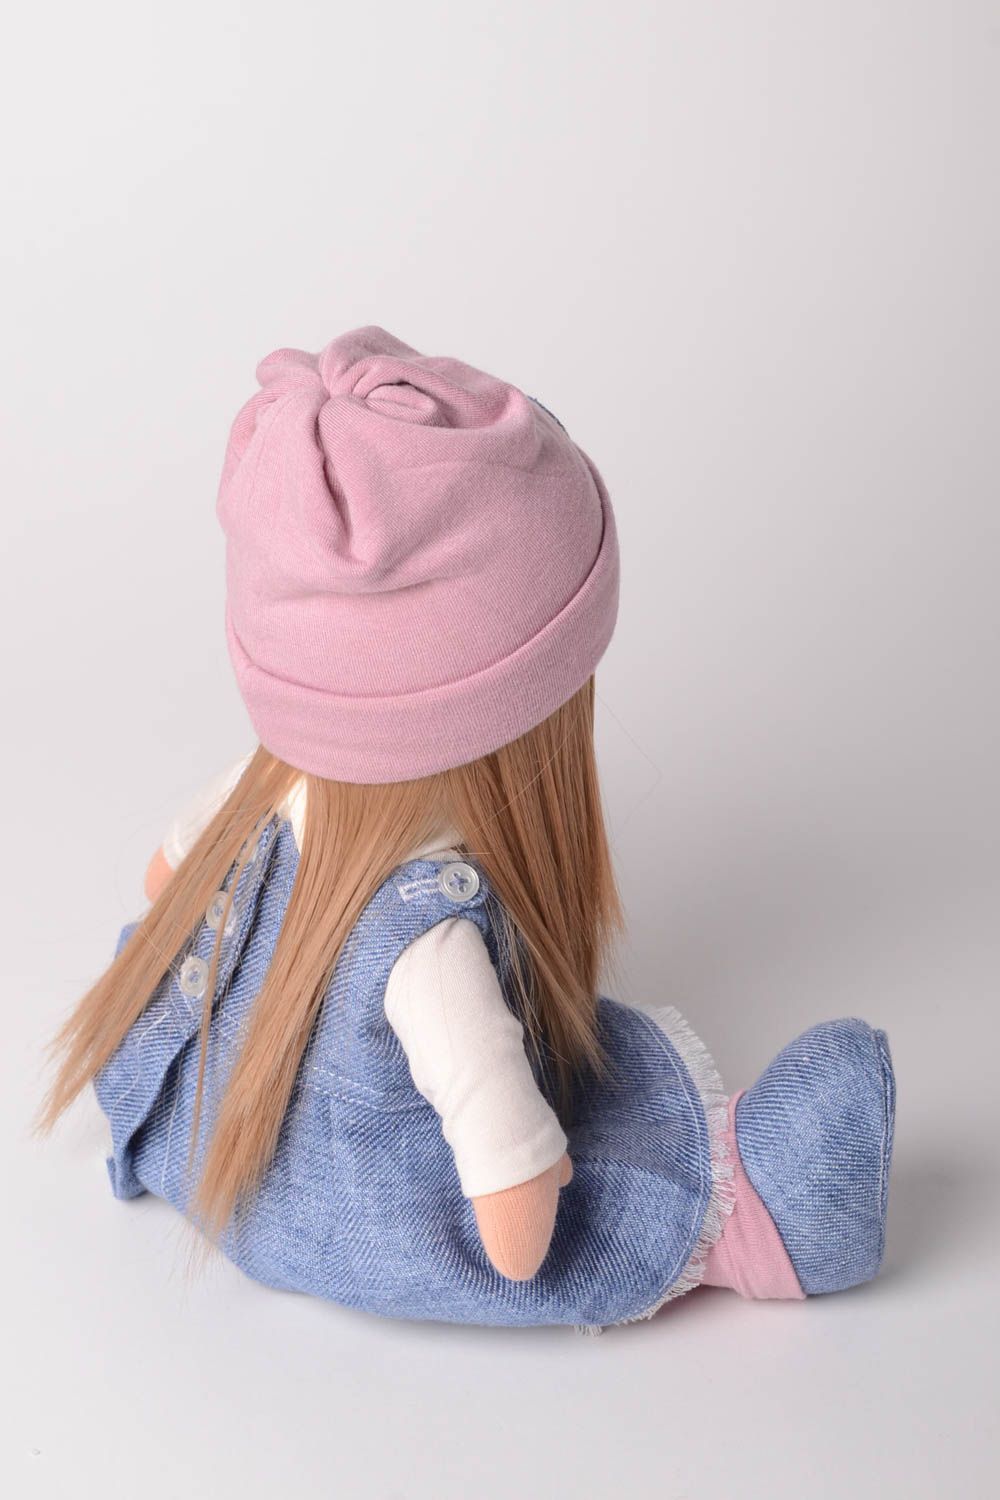 Кукла ручной работы кукла из ткани мягкая кукла трикотажная в джинсовом платье фото 3